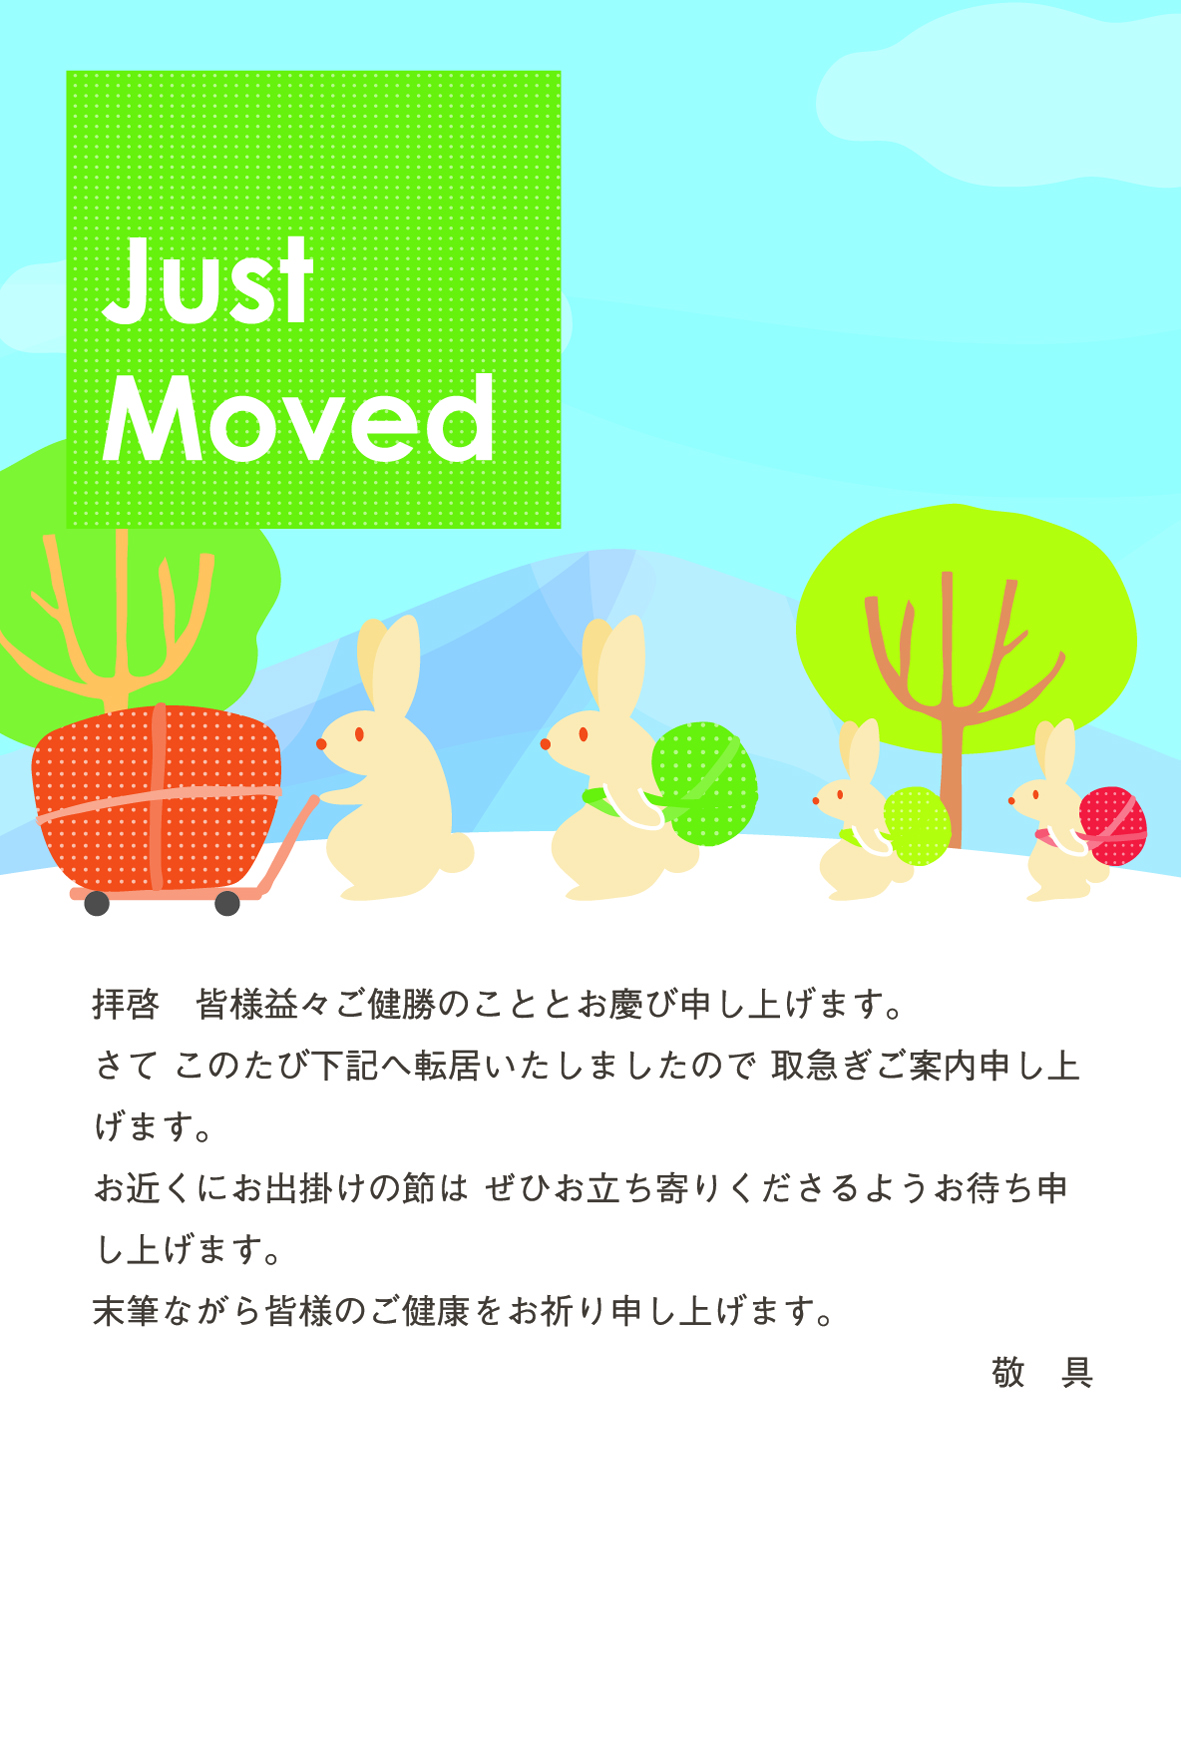 動物【ウサギ】イラストの引越しはがきグリーン色